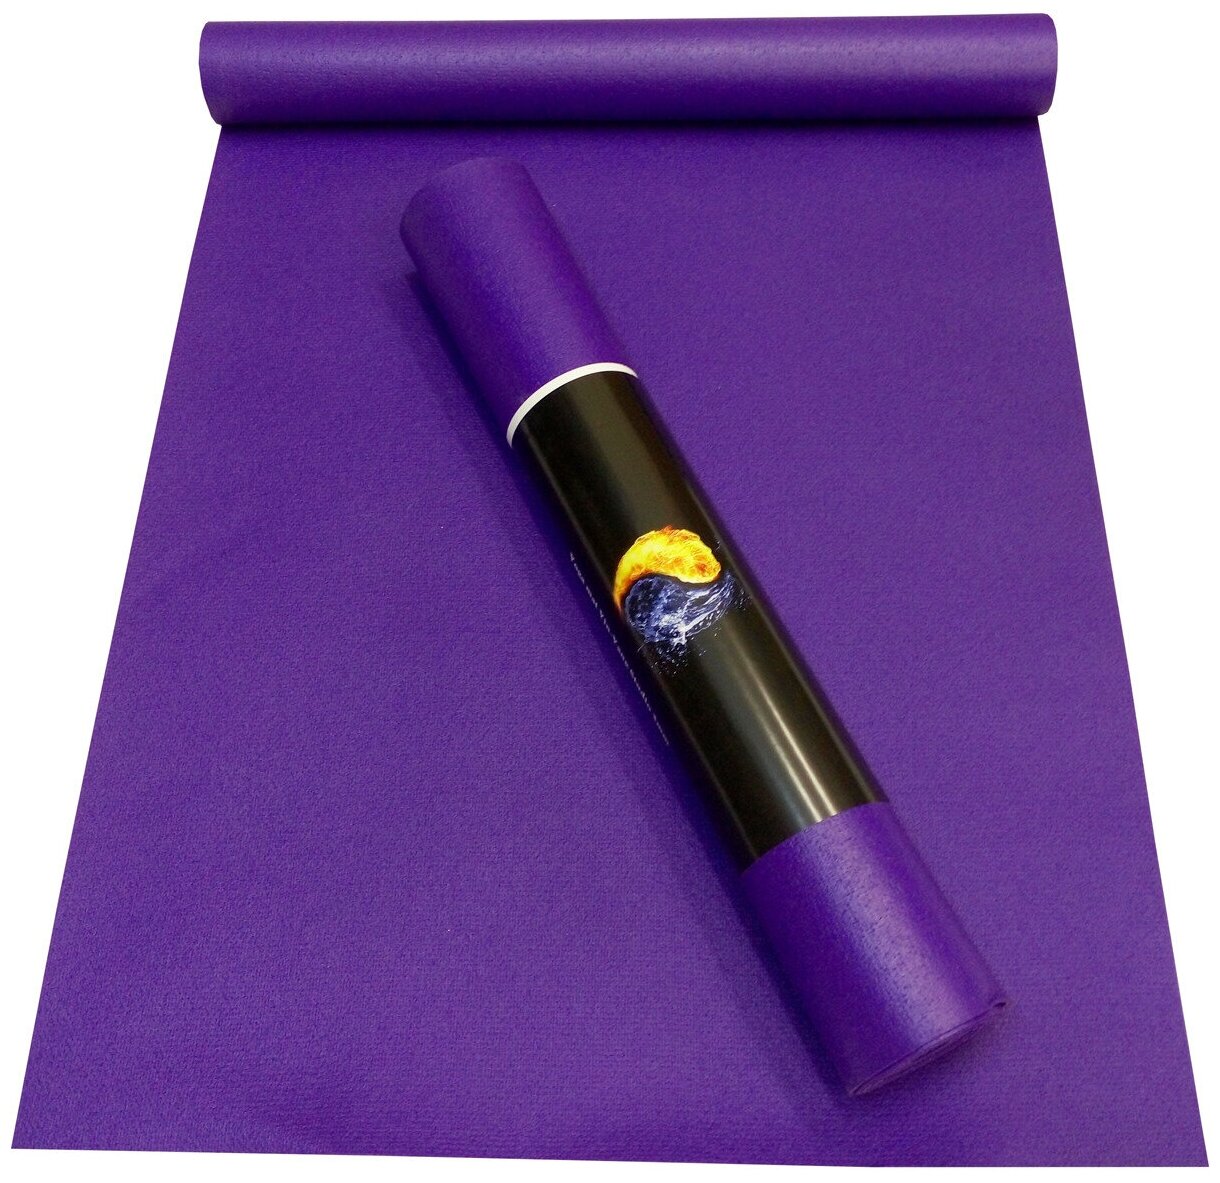 Коврик для йоги и фитнеса детский RamaYoga Yin-Yang Light, фиолетовый, размер 150 х 60 х 0,3 см